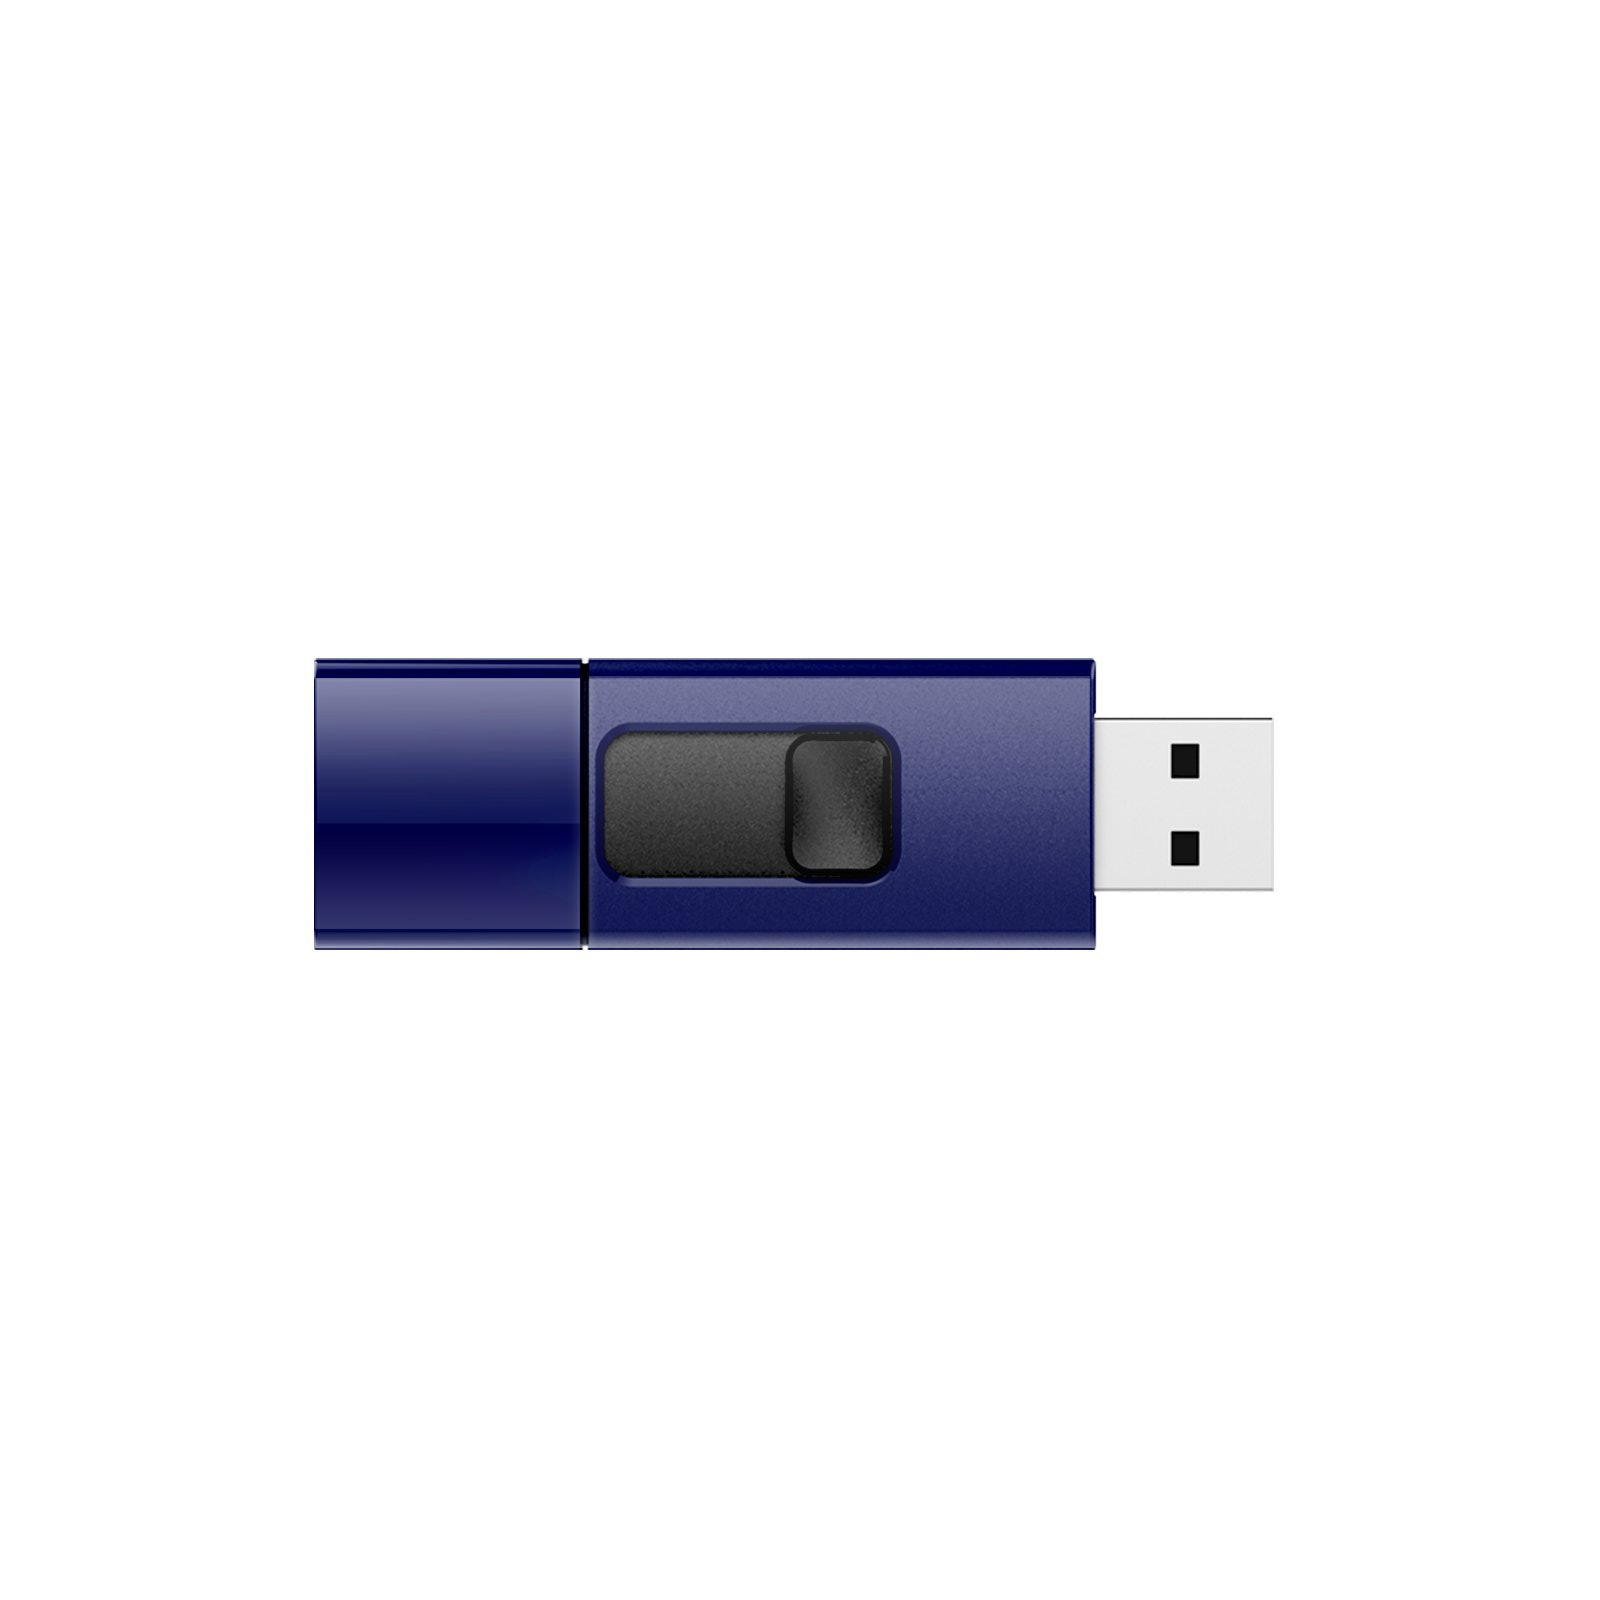 USB флеш накопичувач Silicon Power 128GB Blaze B05 Blue USB 3.0 (SP128GBUF3B05V1D) зображення 2